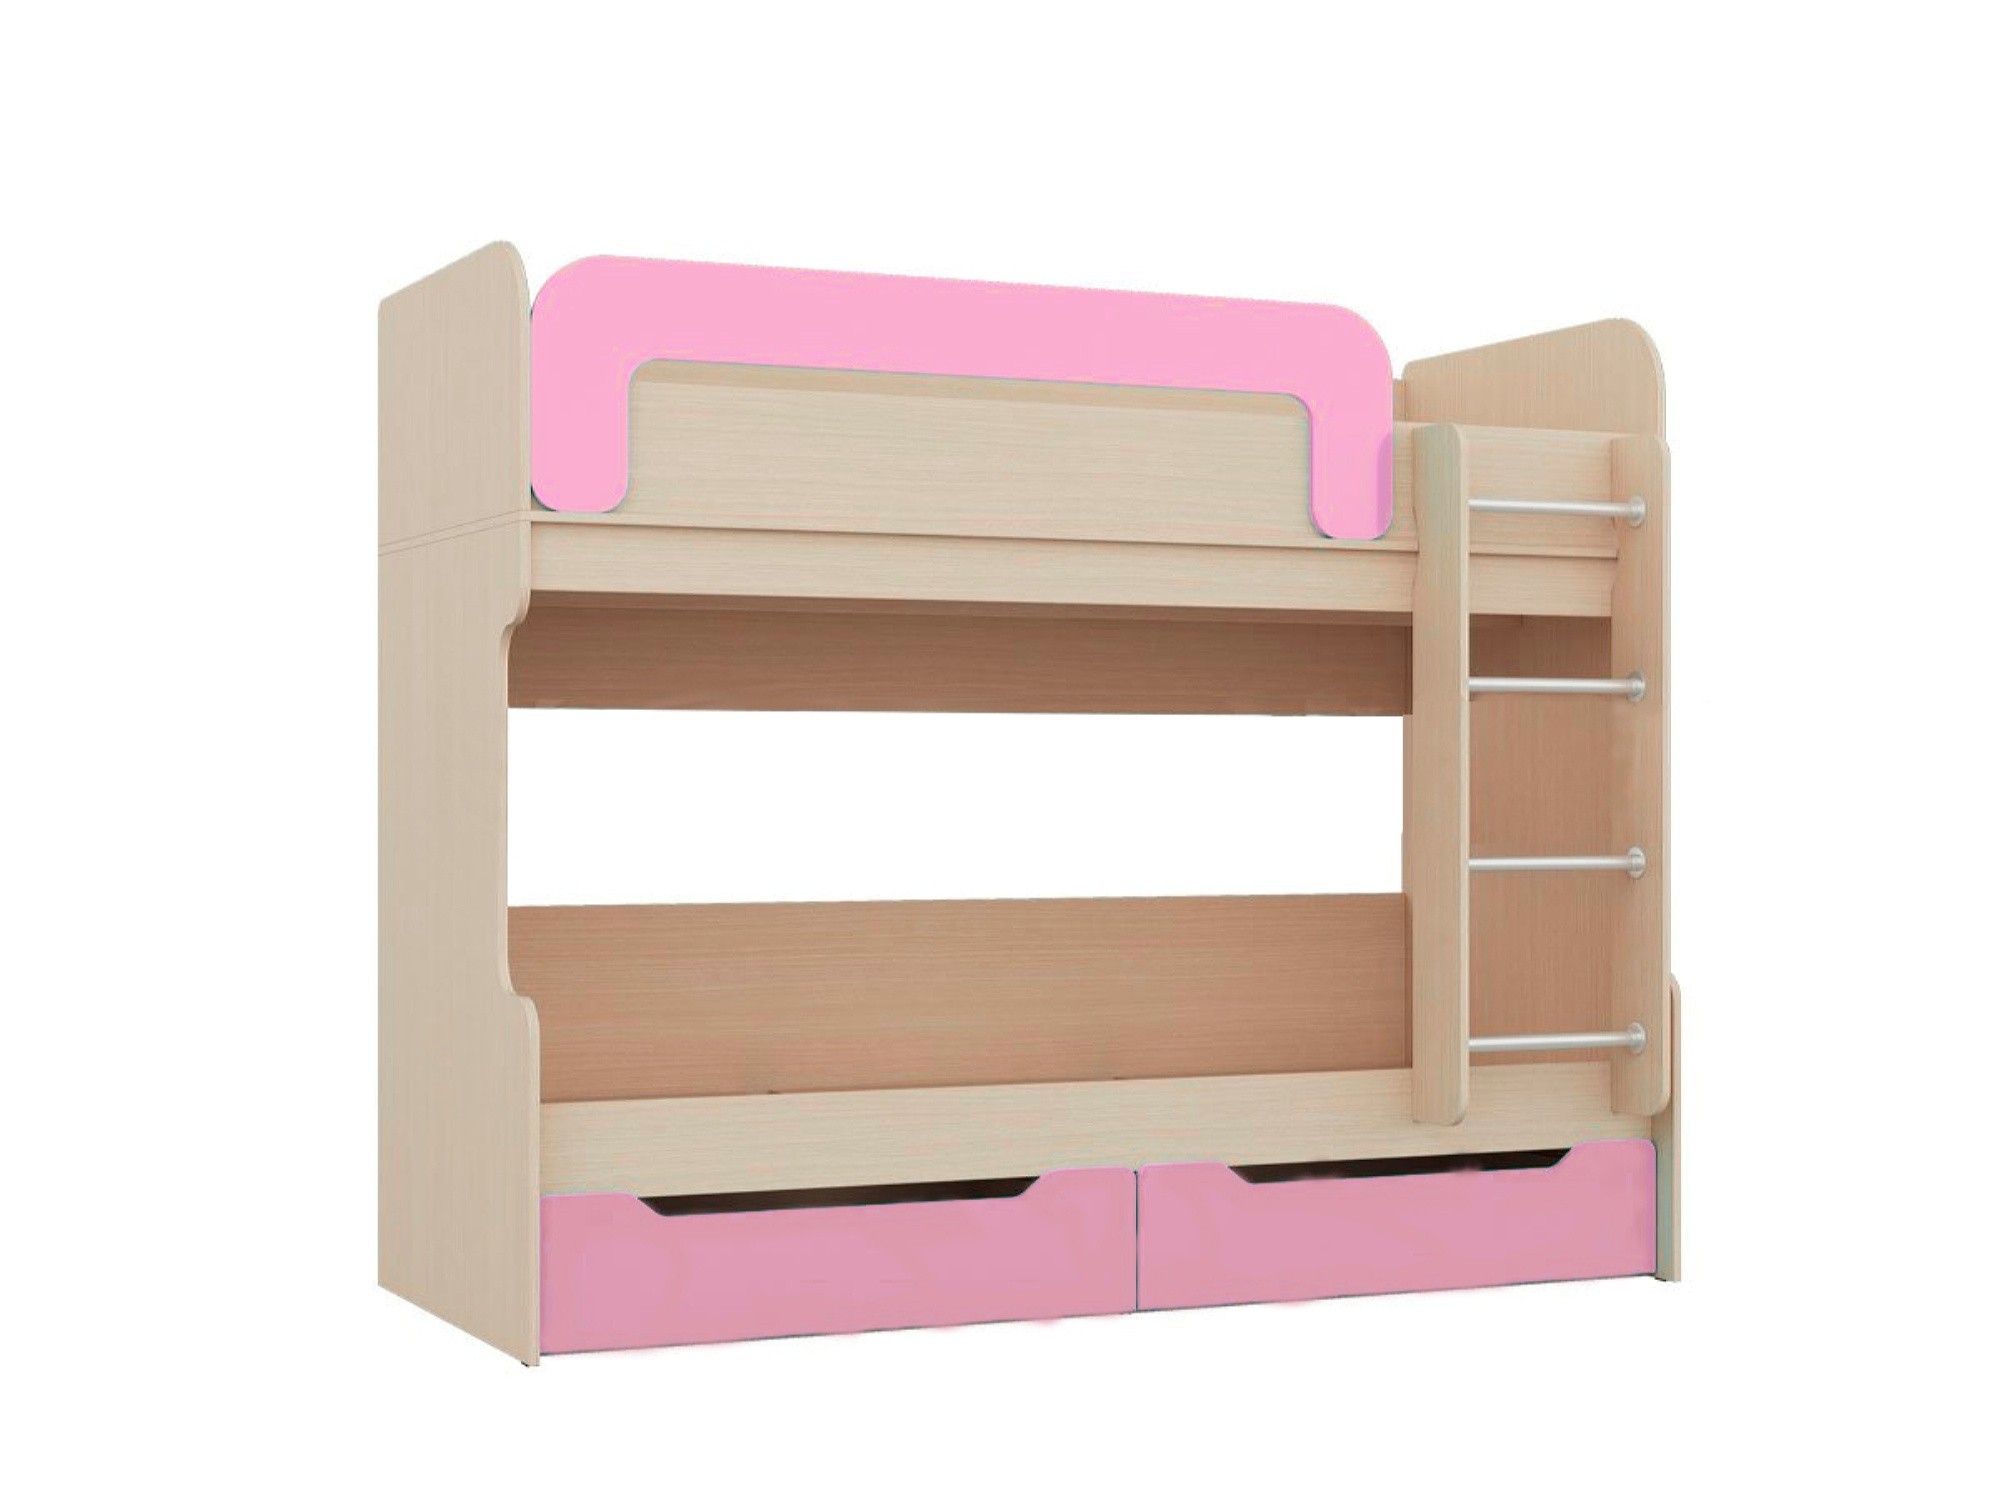 Юниор-1 Двухъярусная кровать 80 (Розовый металлик, Дуб белёный) Розовый металлик, ЛДСП двухъярусная кровать юниор 5 дуб молочный оранжевый бежевый лдсп